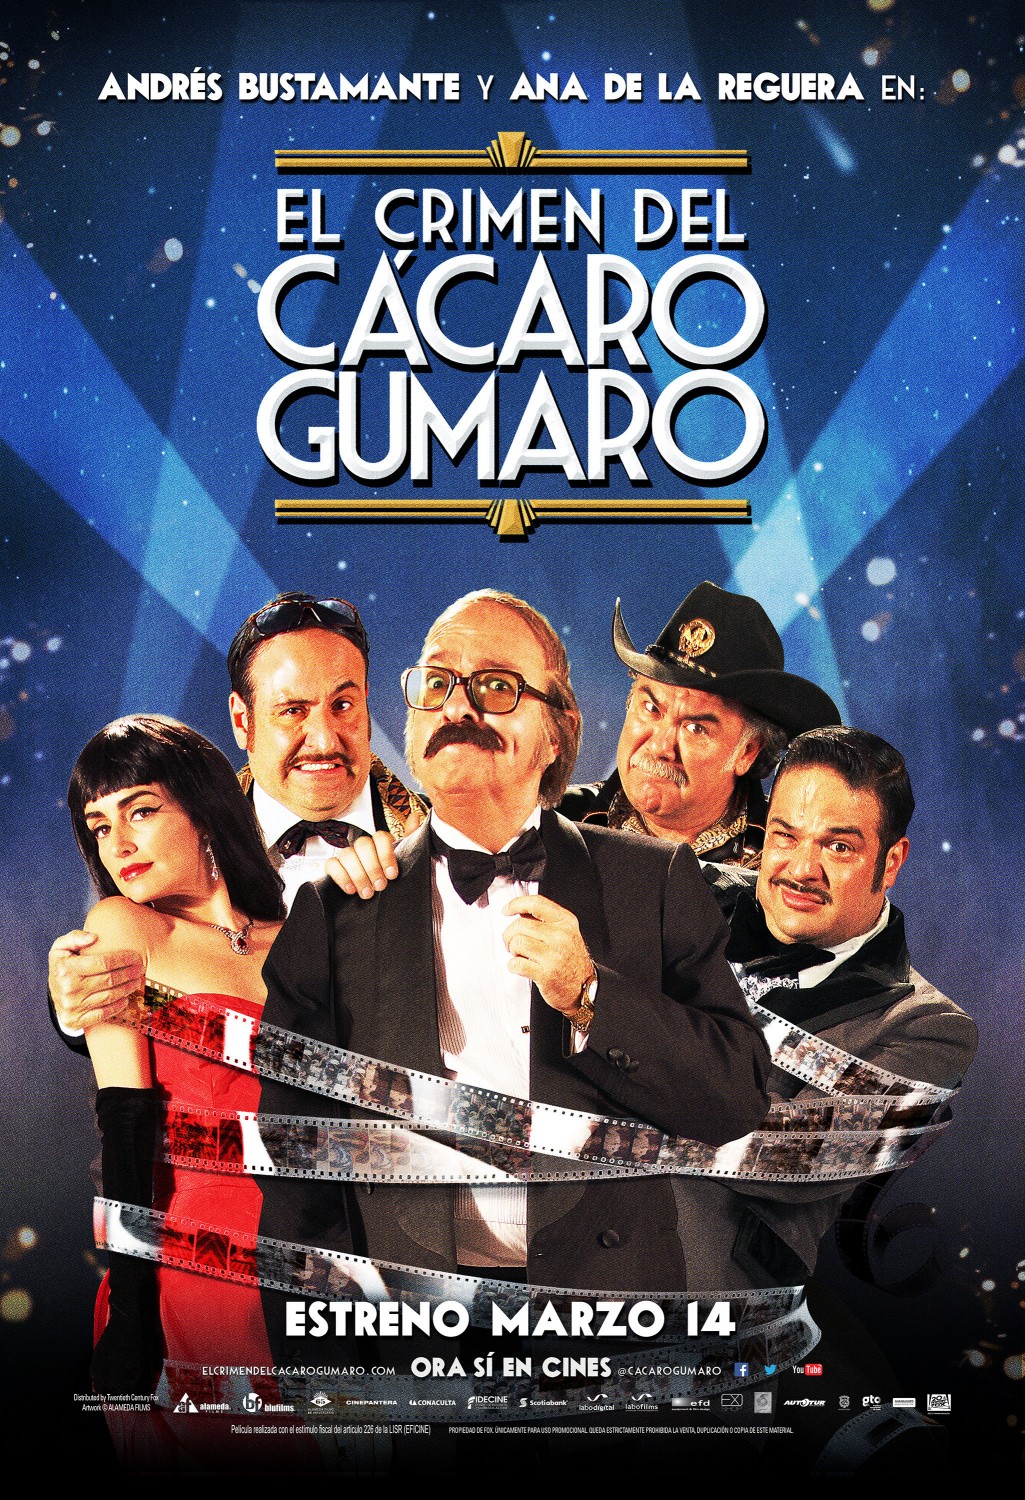 Extra Large Movie Poster Image for El Crimen del Cacaro Gumaro (#11 of 12)